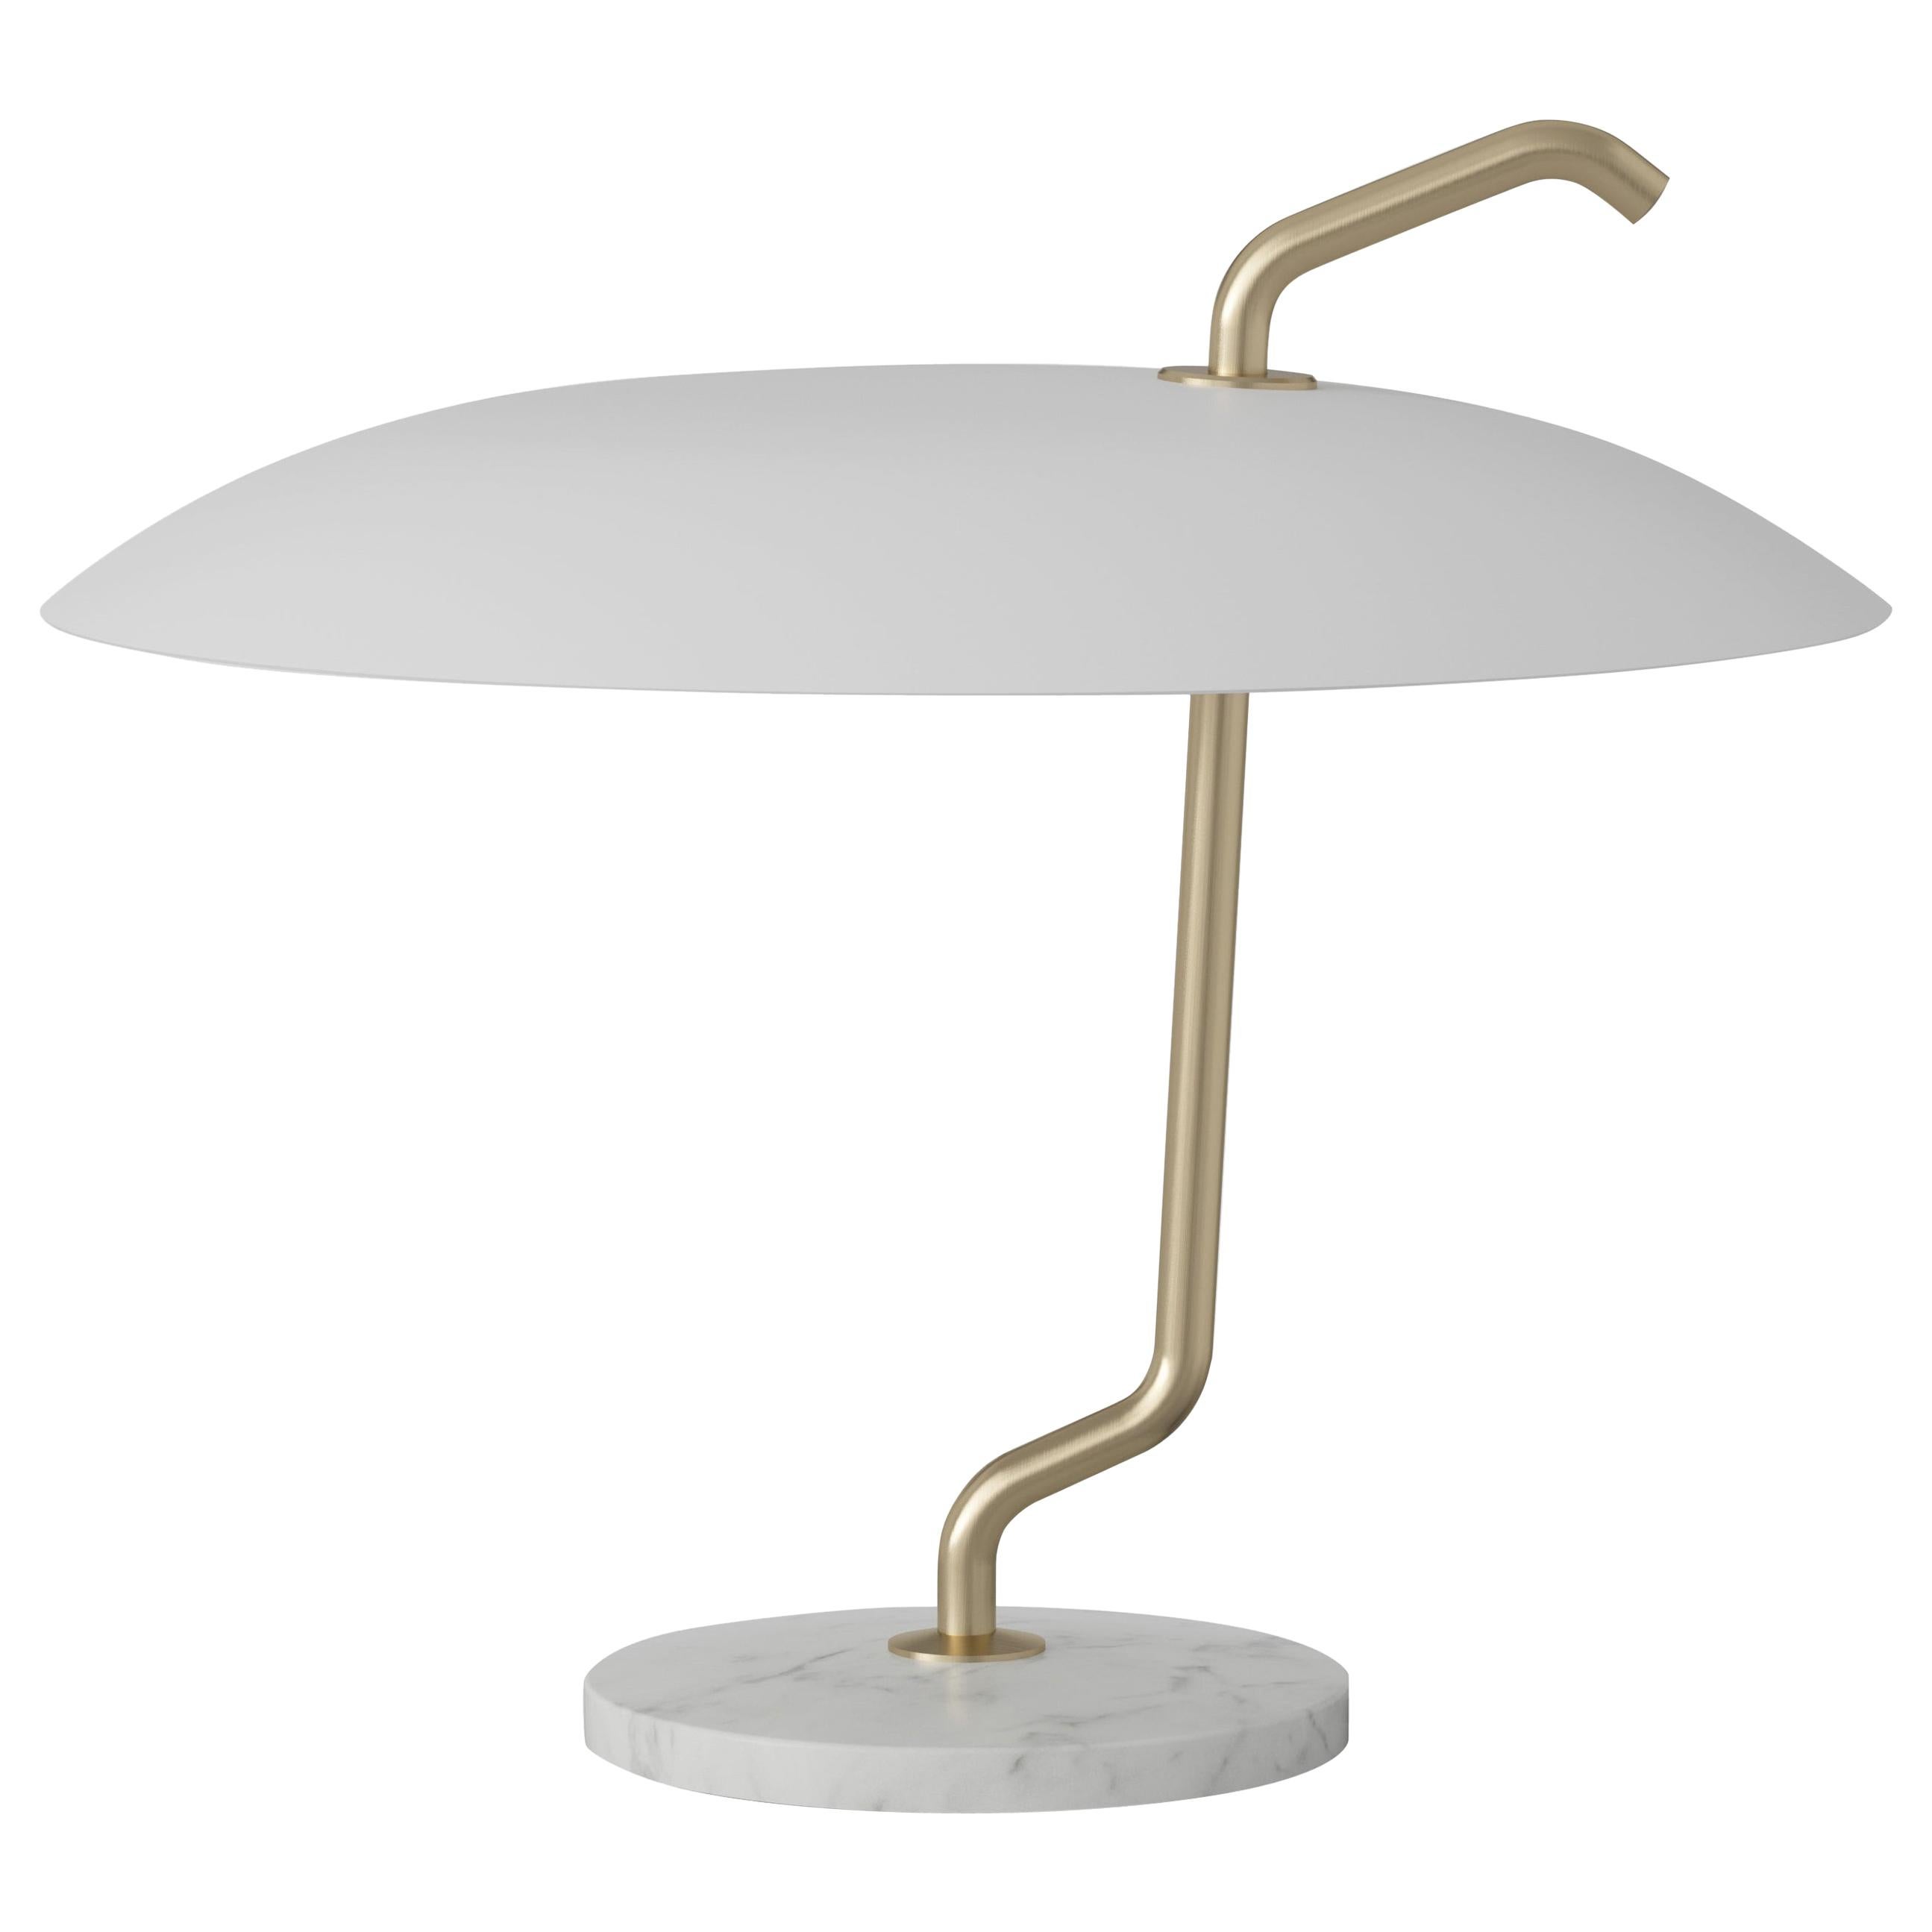 Gino Sarfatti-Lampe Modell 537, Struktur aus Messing, weißer Reflektor für Astep